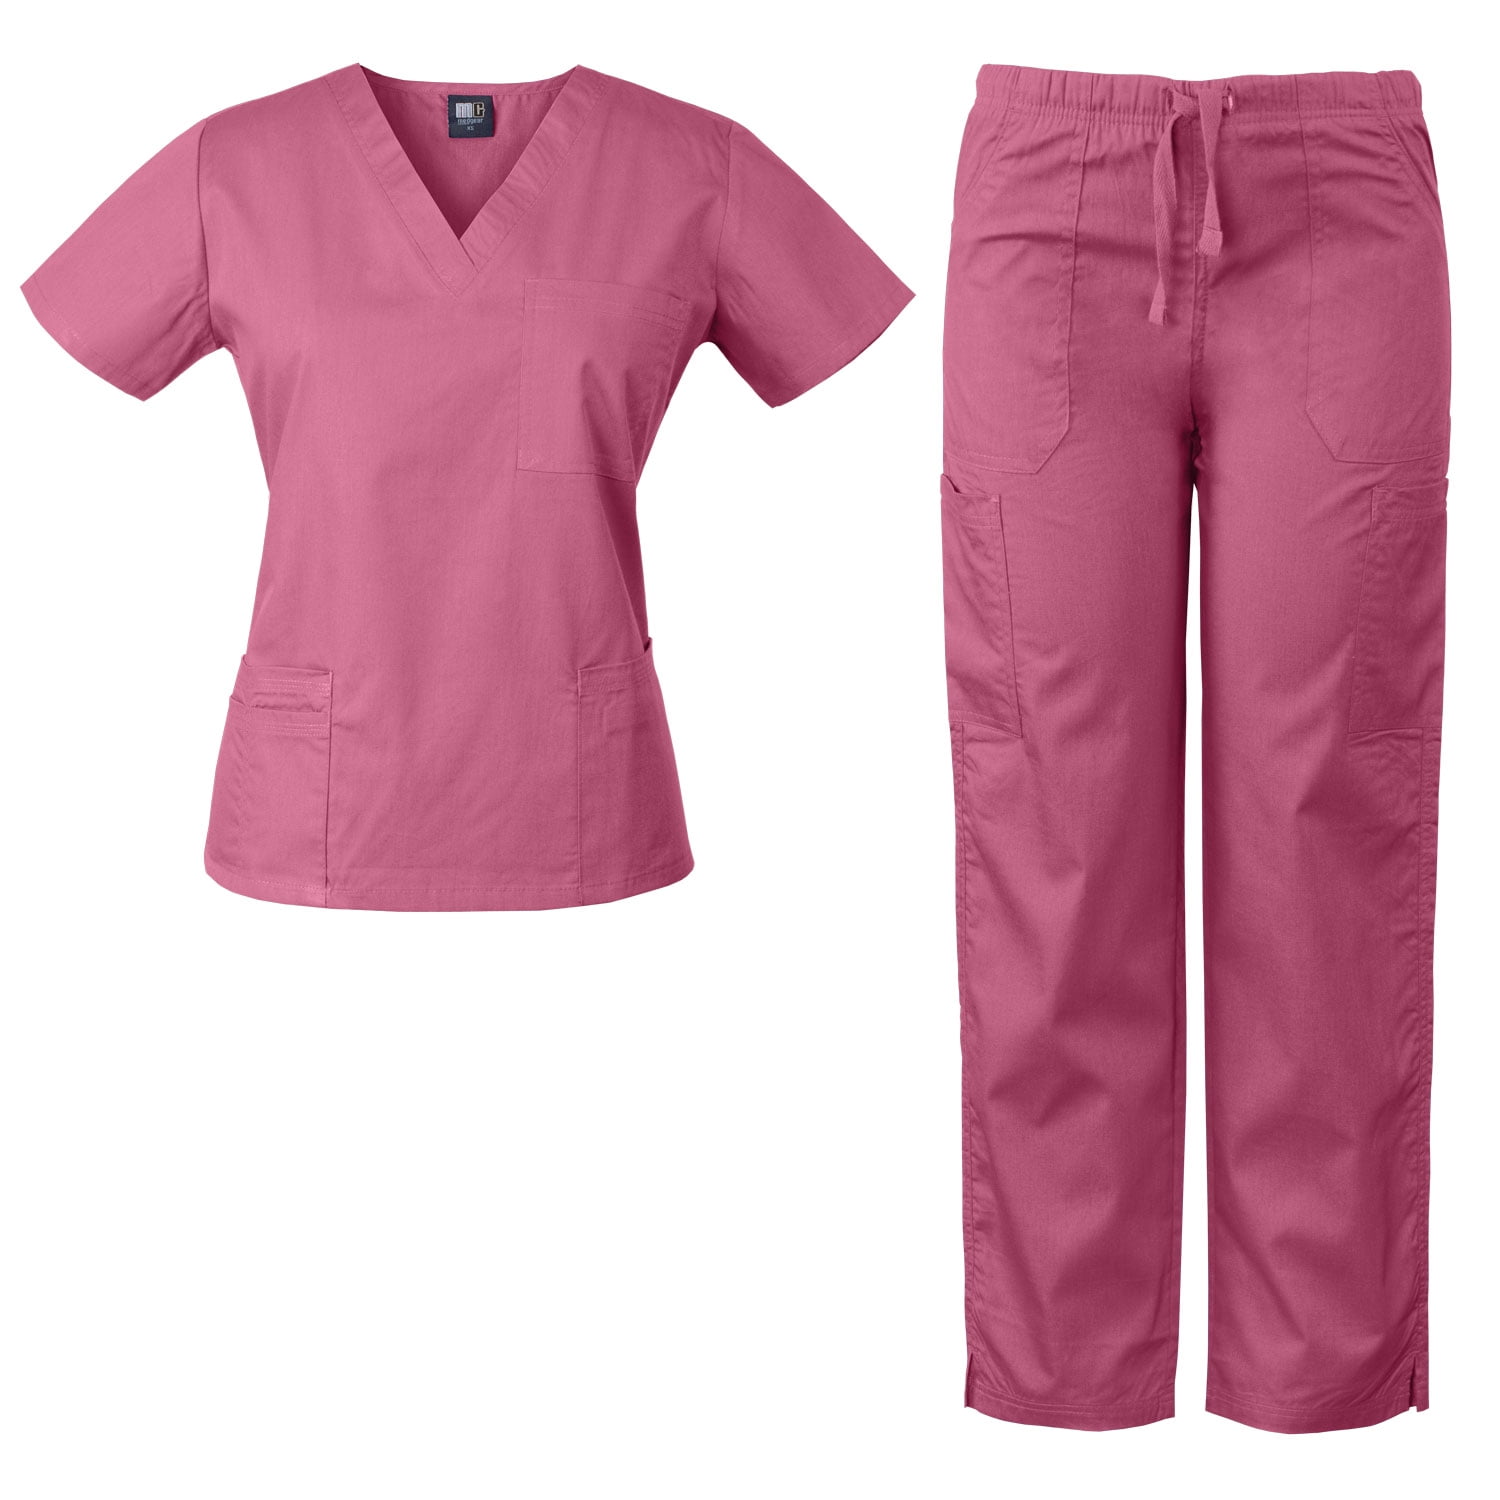 MedGear Womens Scrubs Set Medical Uniform - 4 Pocket Top & Multi-pocket ...